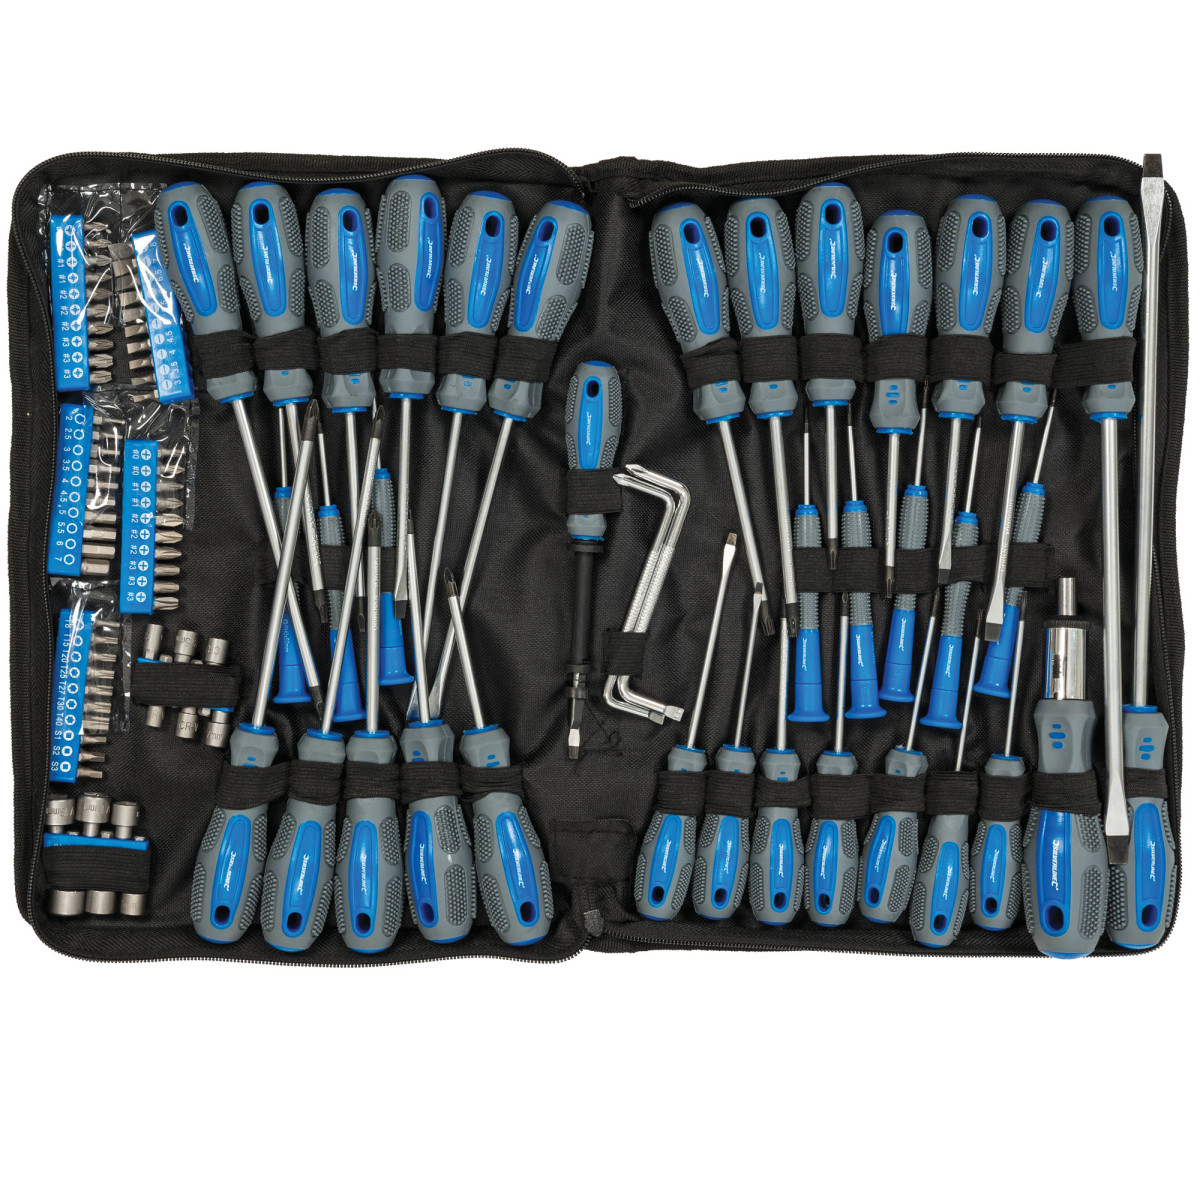 Avizar Kit d'outils complet réparation (tournevis, spatules